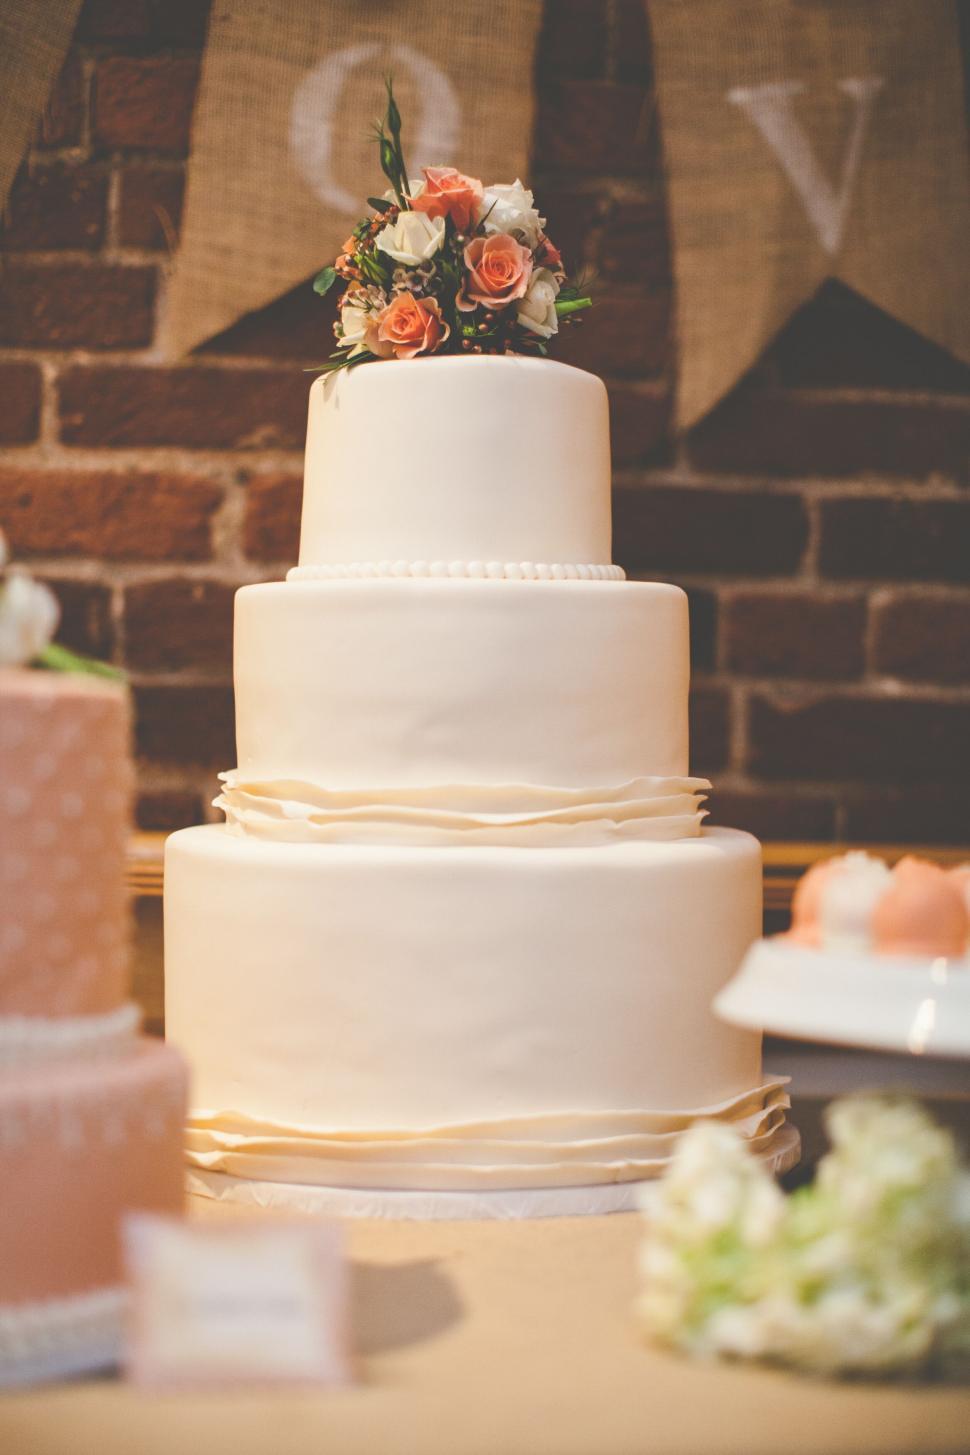 Free Image of Wedding cake with elegant white icing 